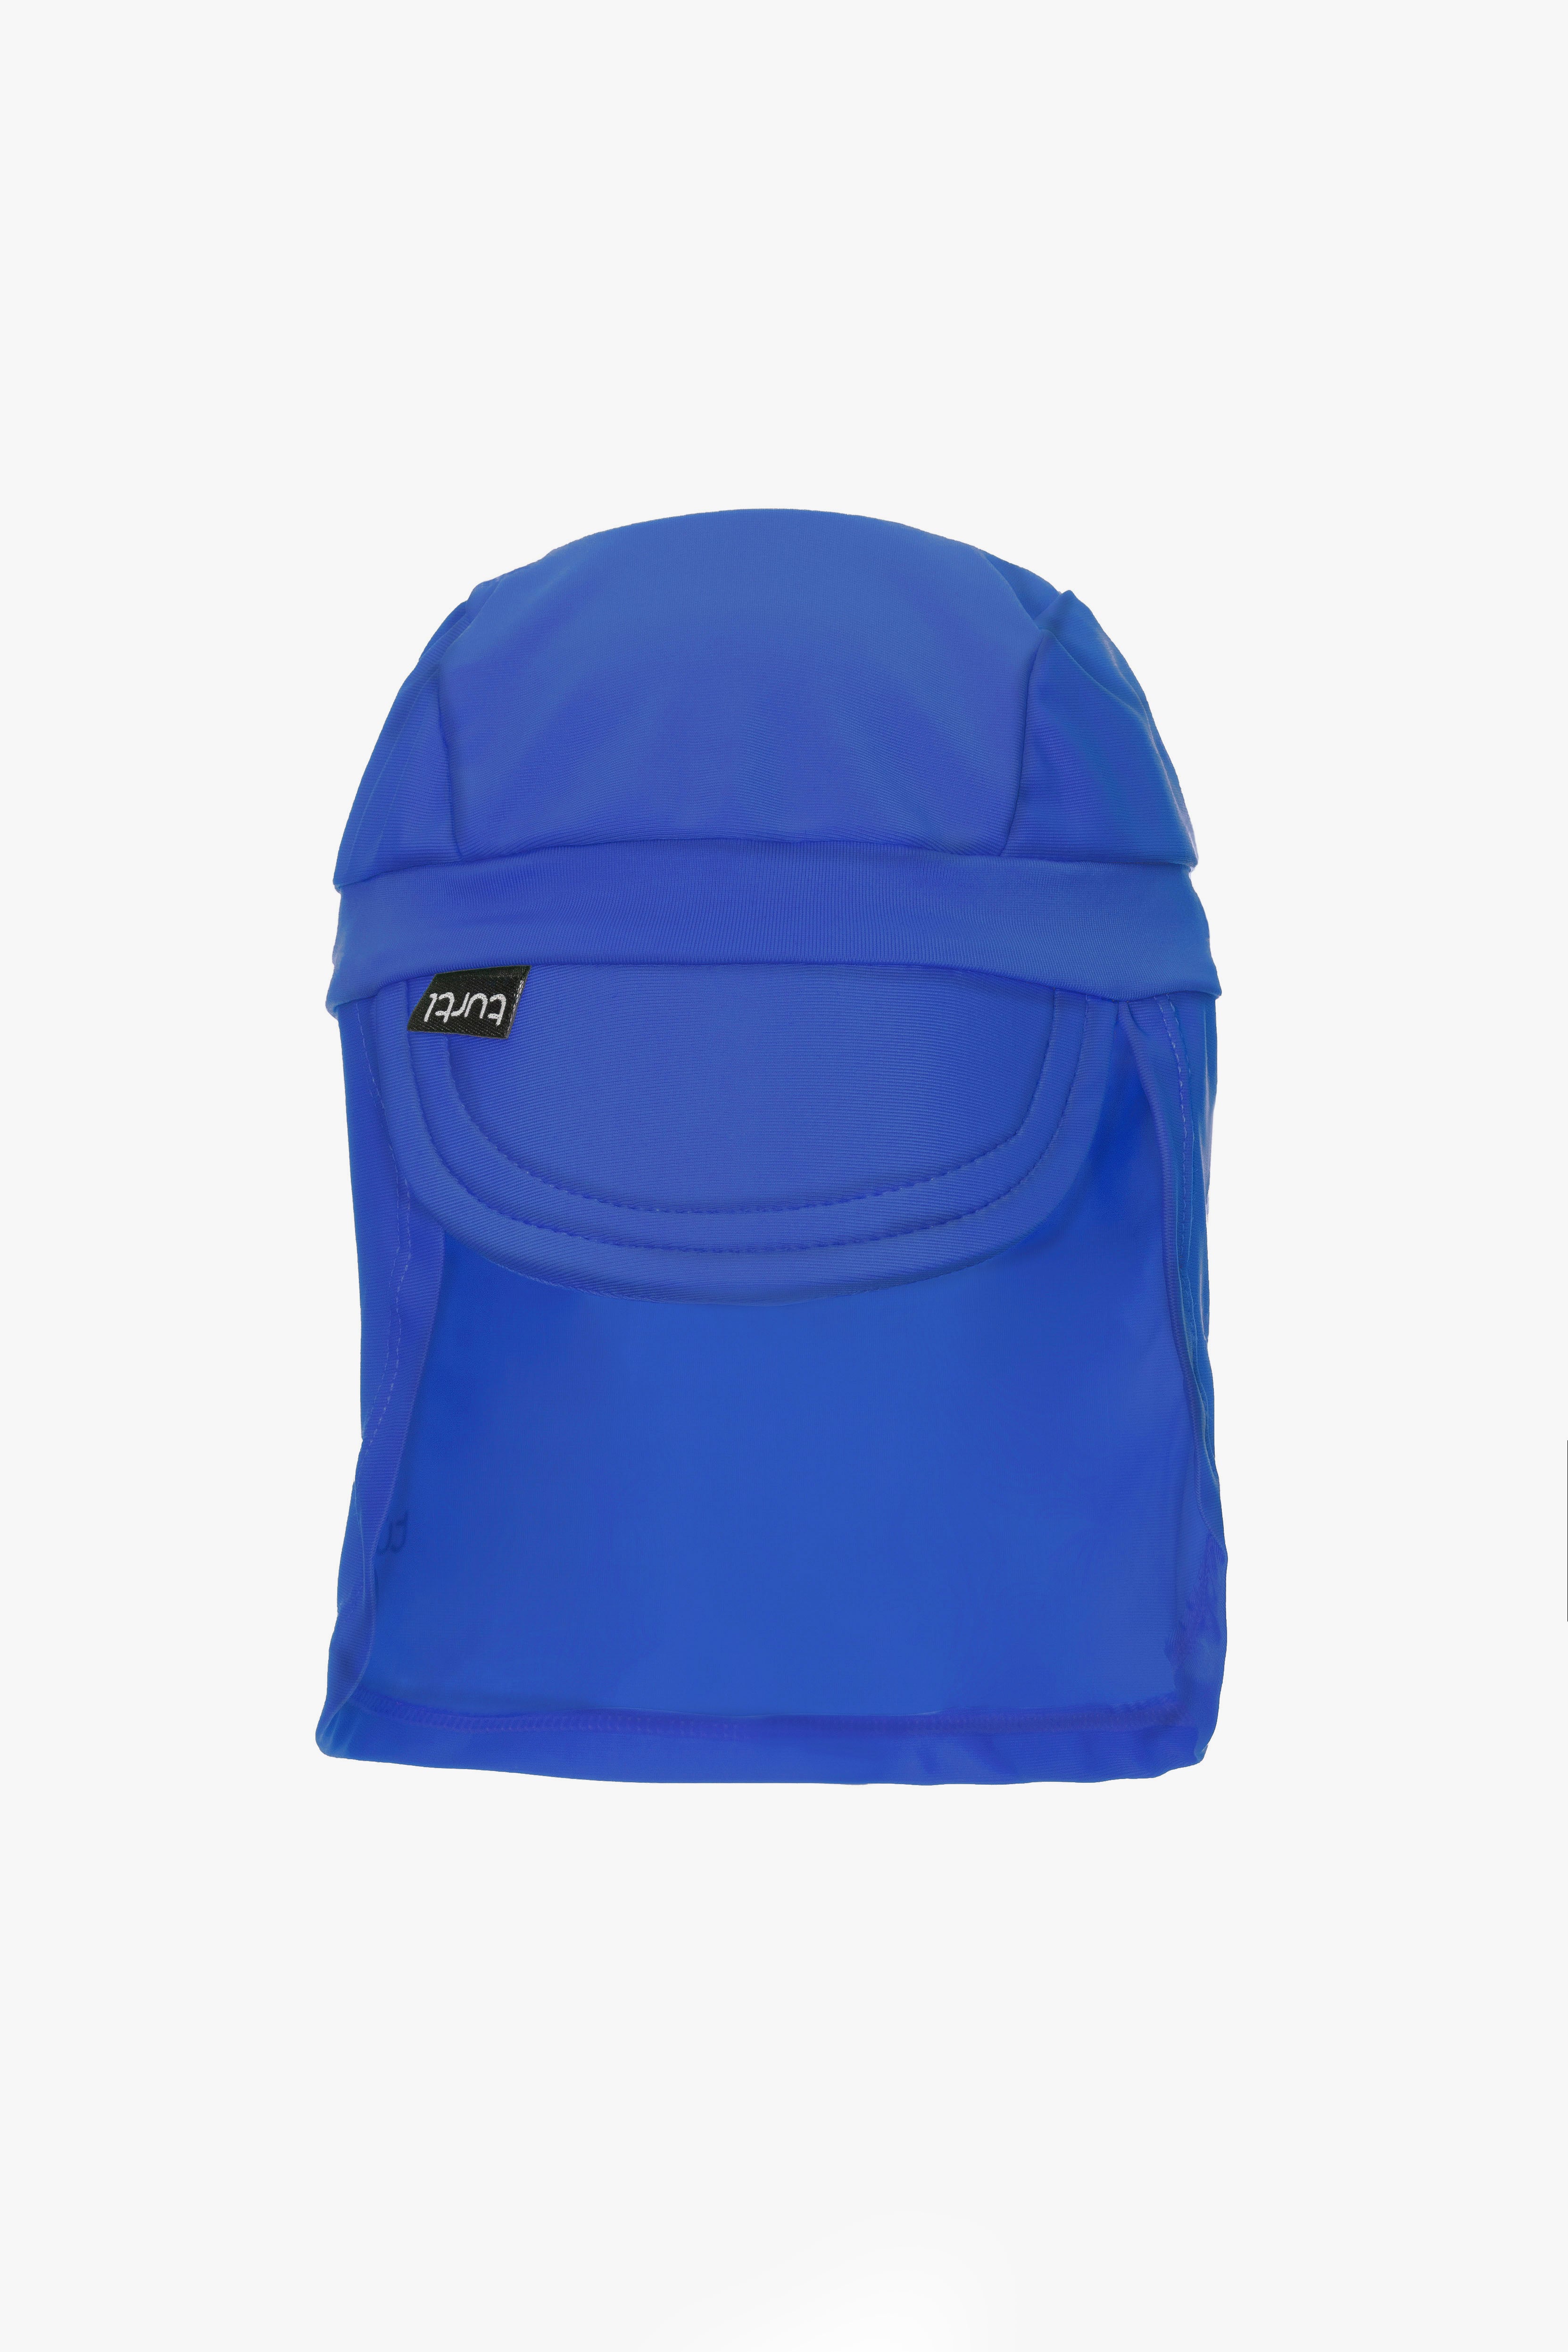 sun hat in blue